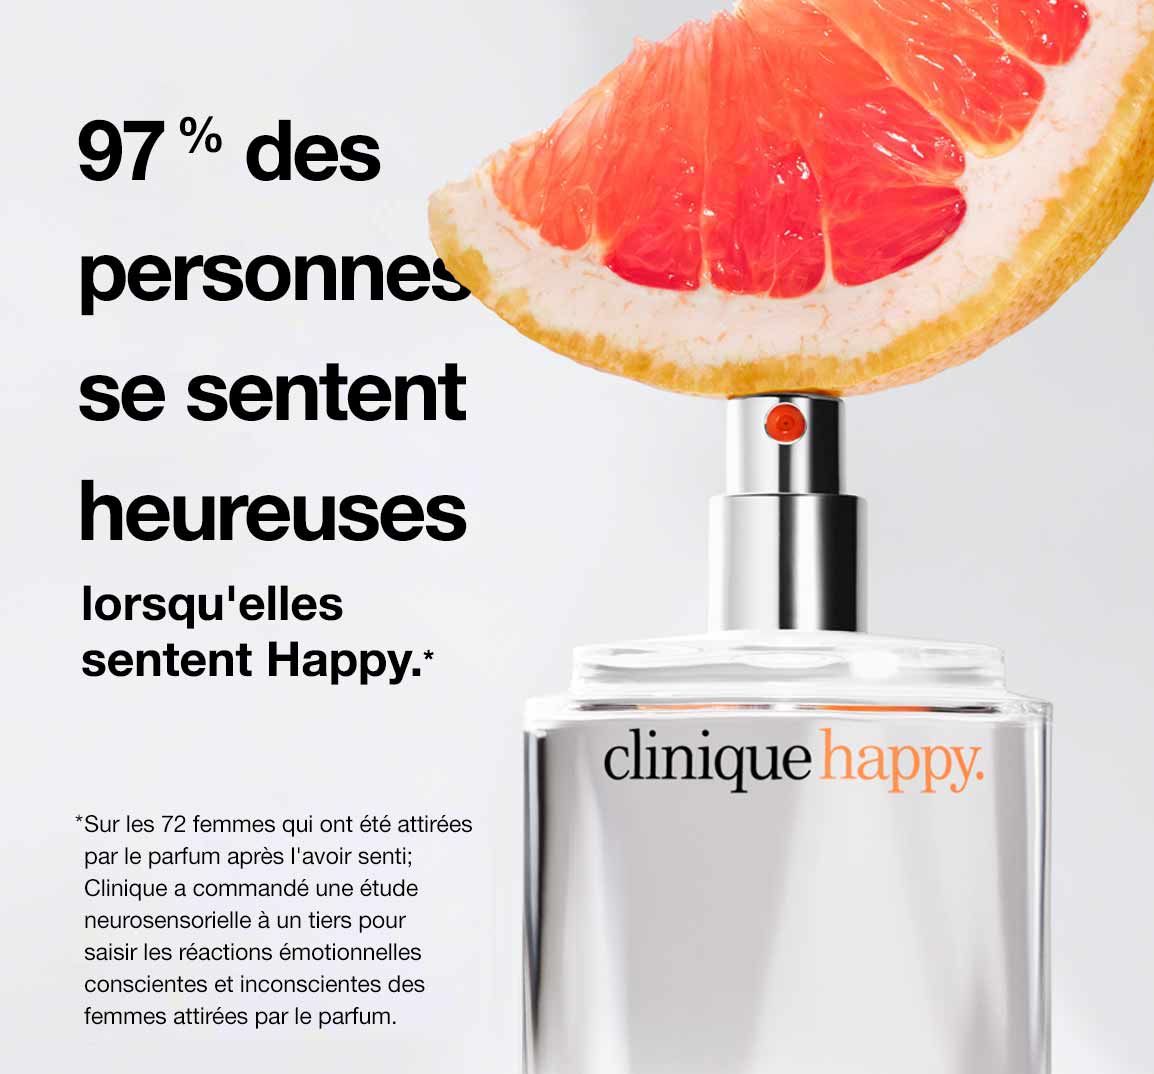 97 % des personnes se sentent heureuses lorsqu’elles sentent Happy*.